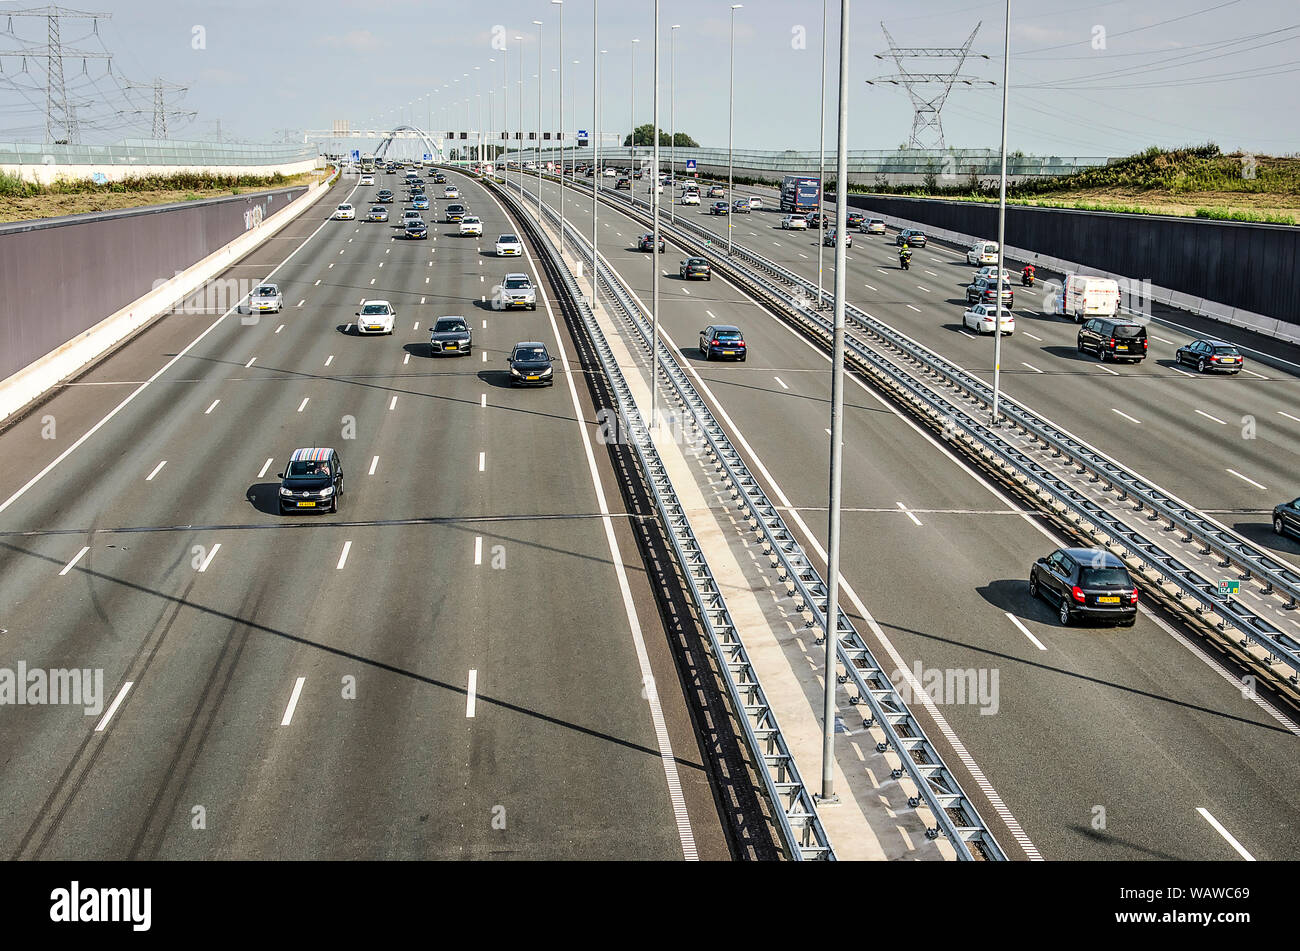 Steenwijk, Niederlande, 21. August 2019: Luftbild von der Autobahn A1 zwischen Amsterdam und Amersfoort, mit 2x5 Fahrspuren und einem zweispurigen rush hour s Stockfoto